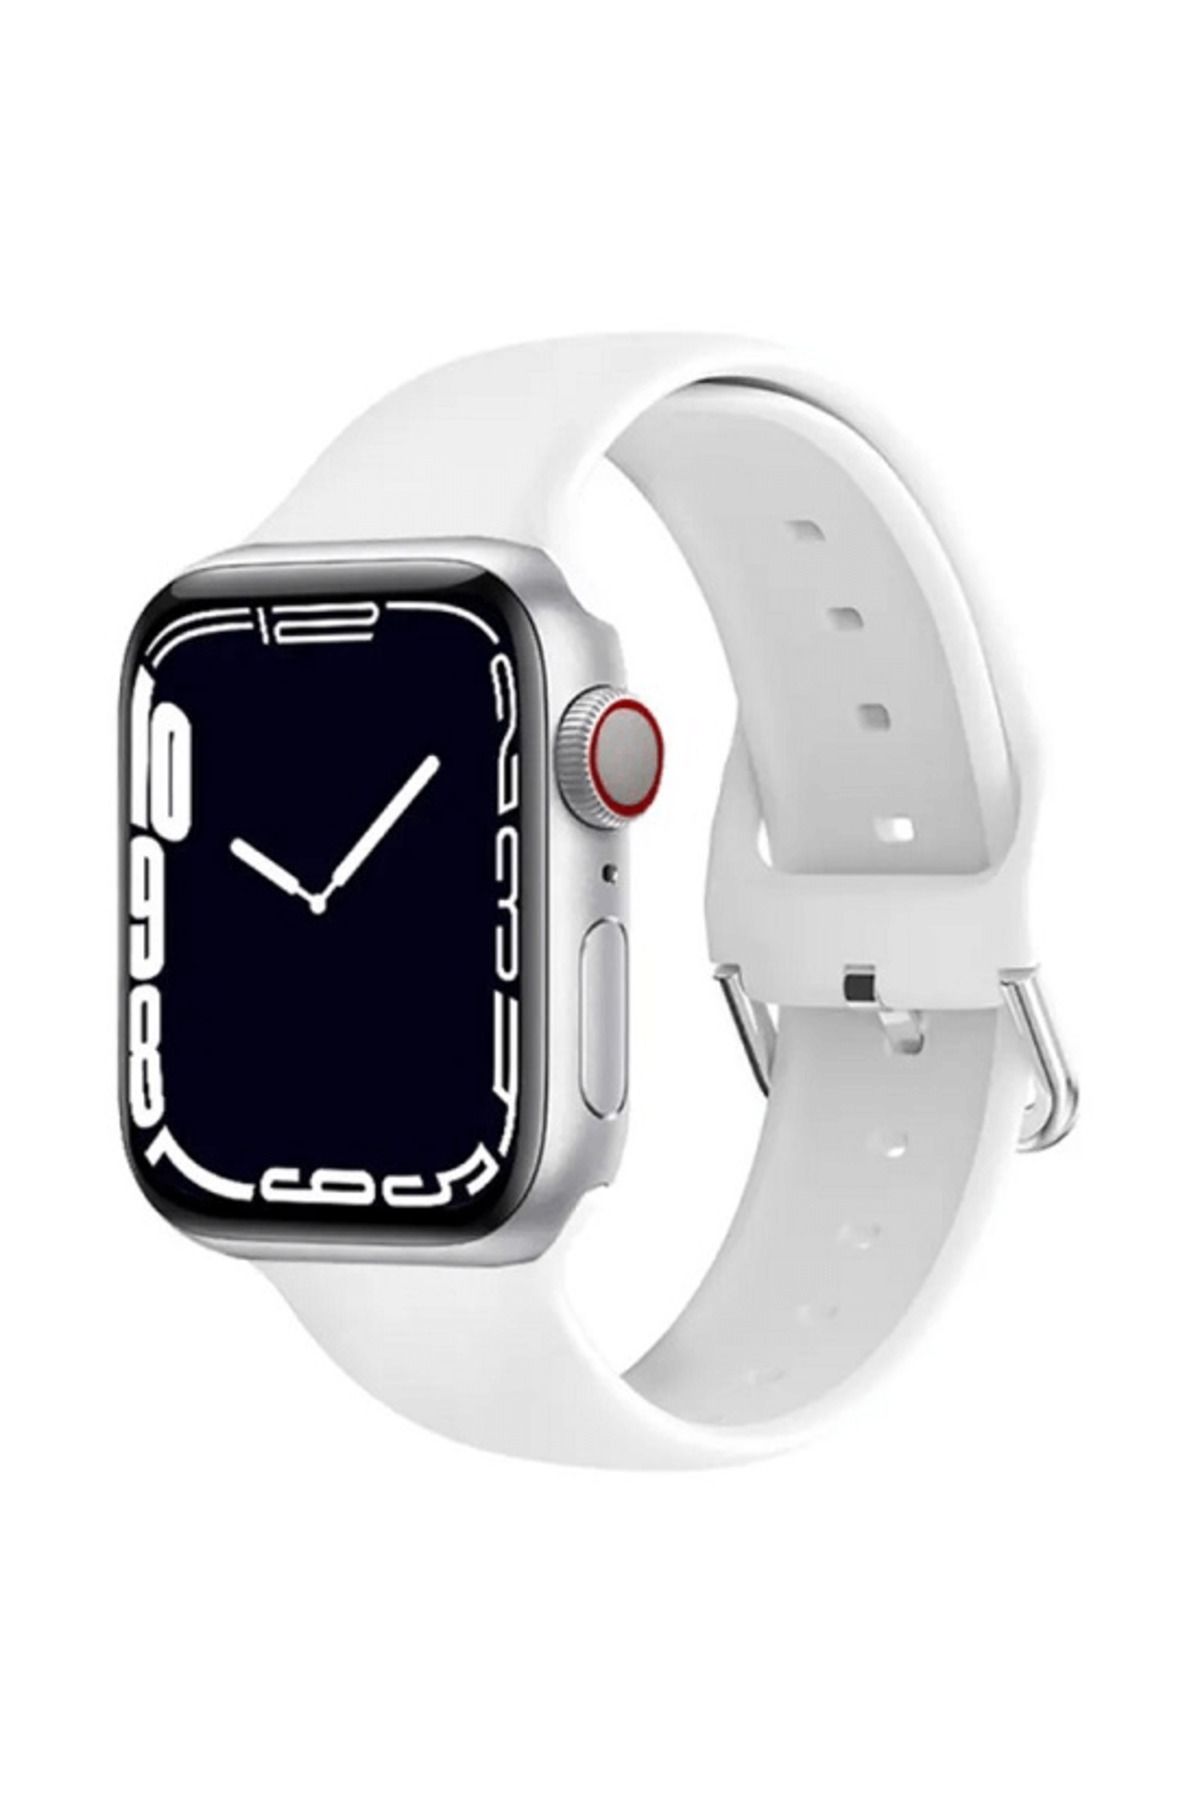 Yenimiyeni Beyaz Watch 6 Plus Akıllı Saat Nabız Adımsayar